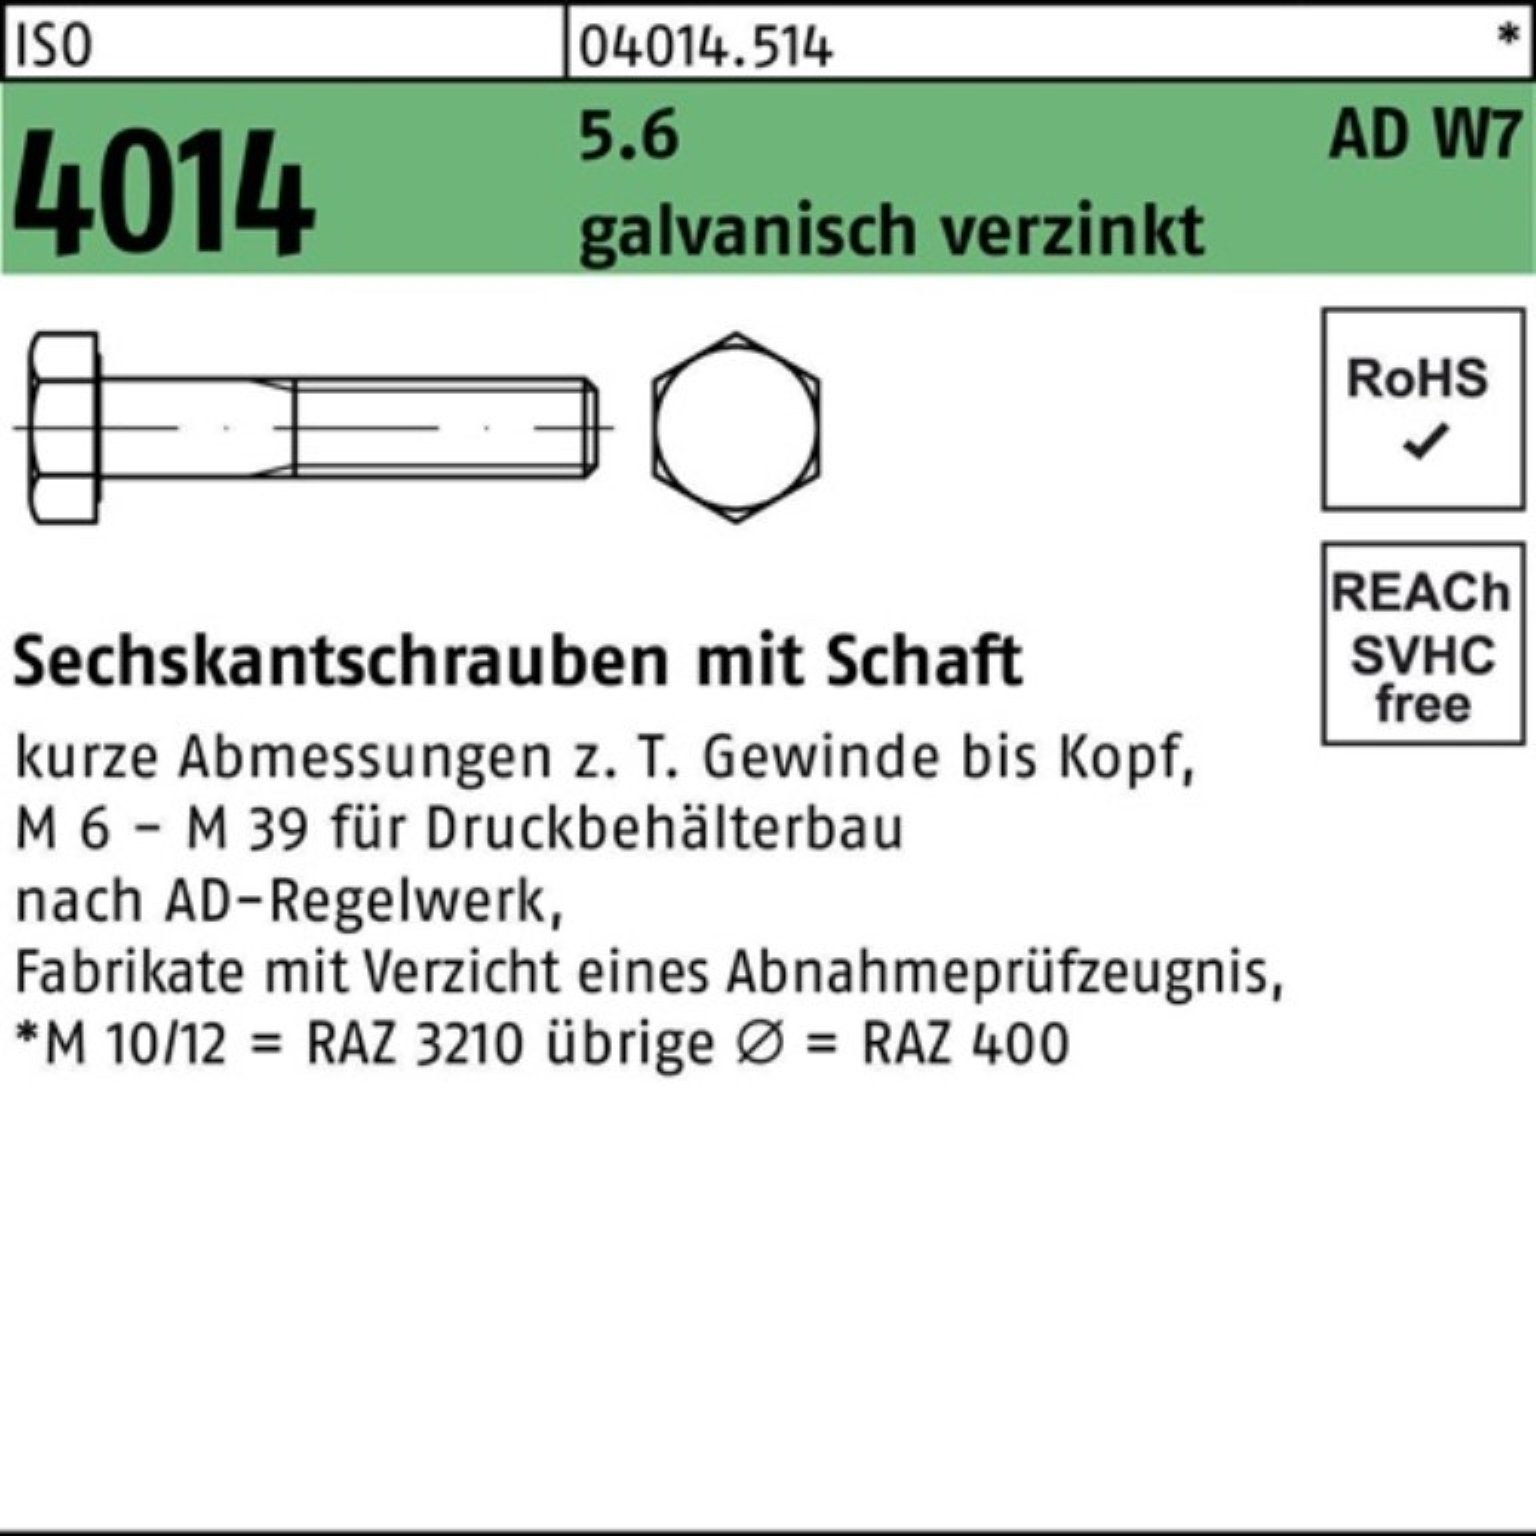 Bufab Sechskantschraube 170 galv.verz W7 Pack Sechskantschraube Schaft 4014 ISO 100er M20x 5.6